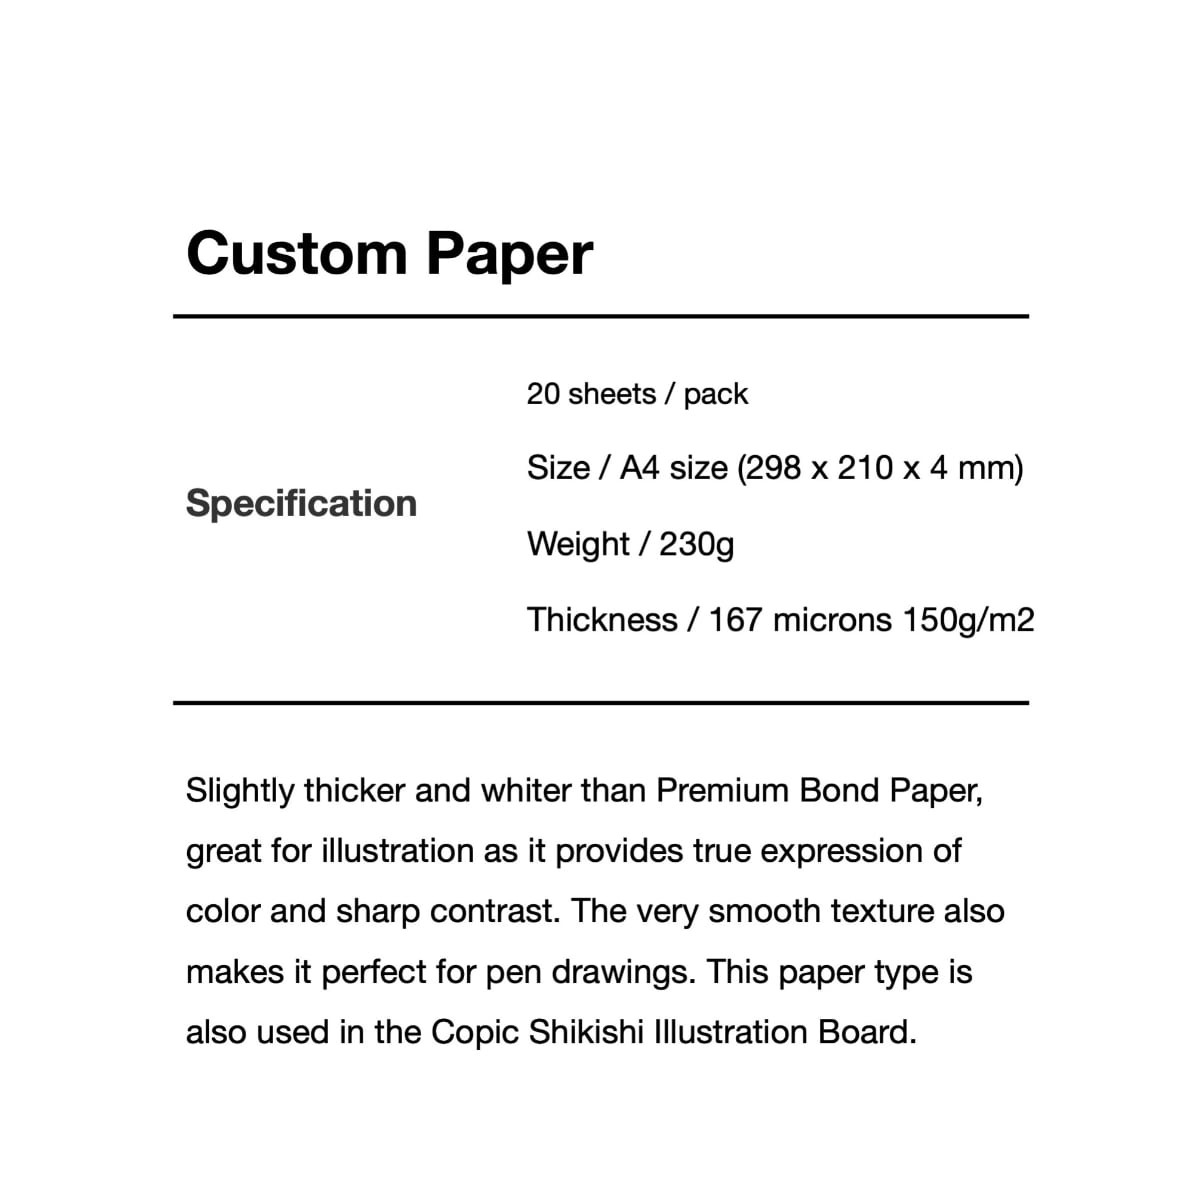 Copic Custom Paper 150g/m2